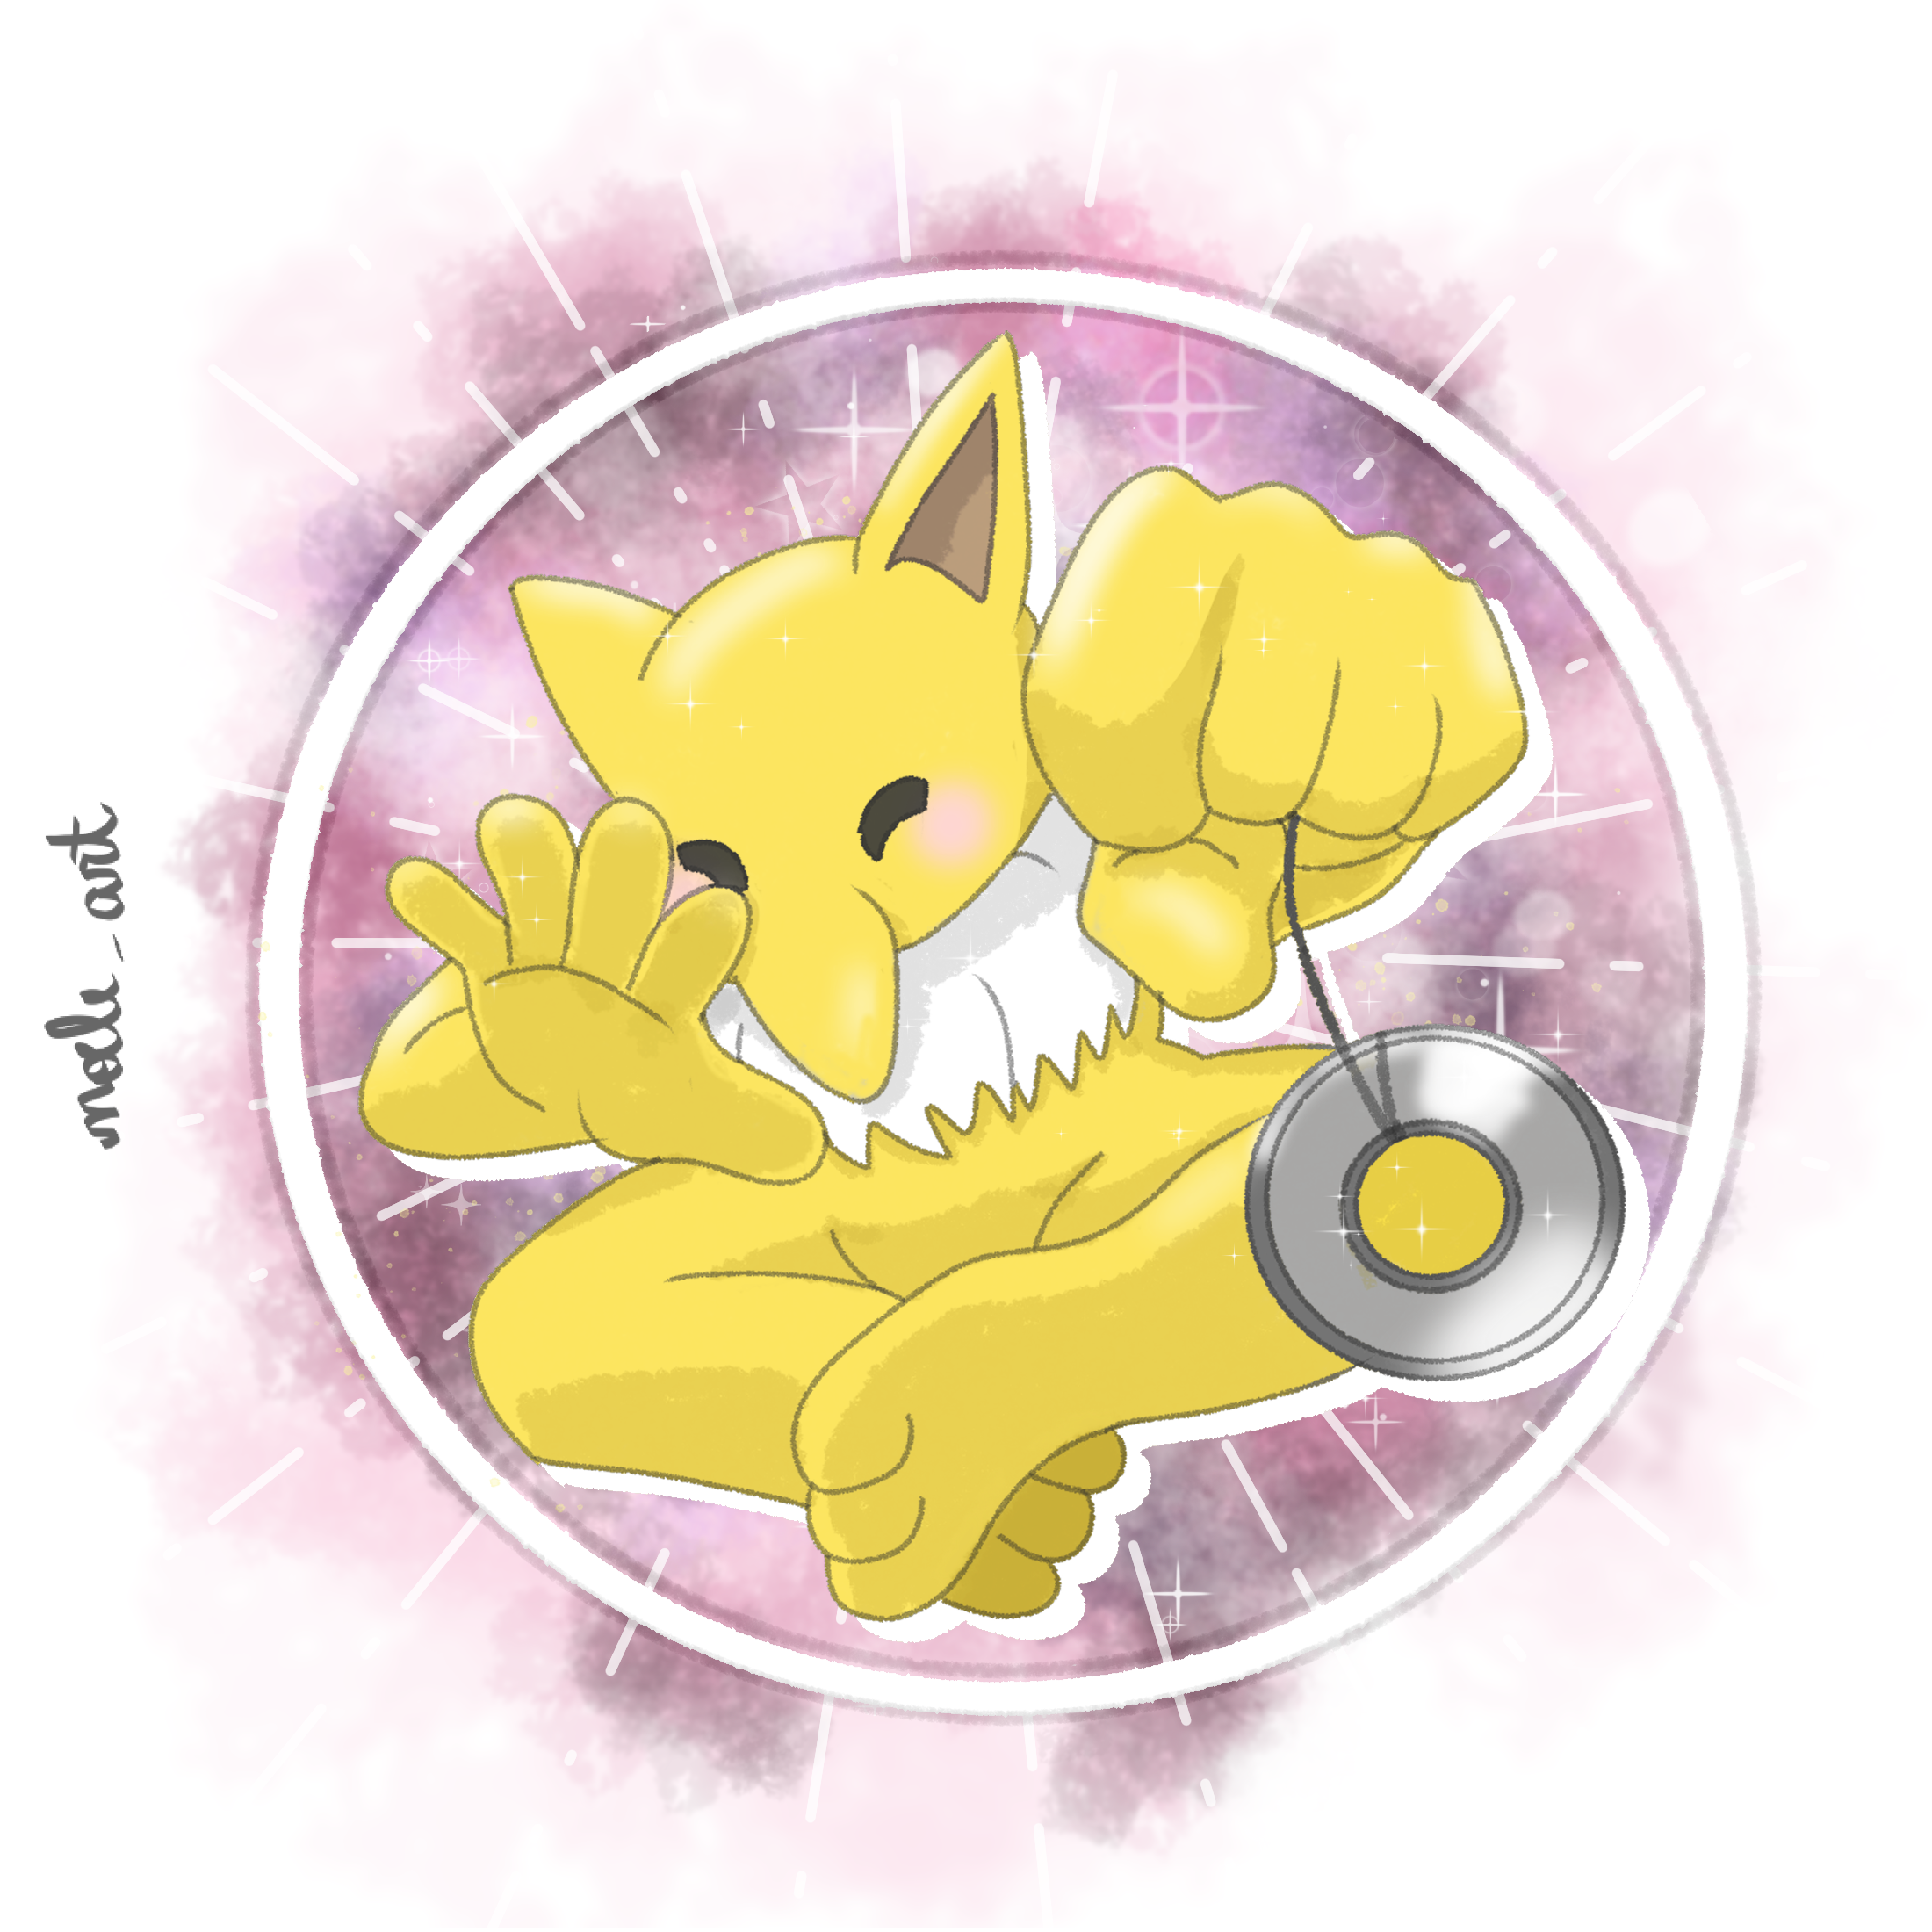 Mew Fan Art Pokemon by noeleart on DeviantArt